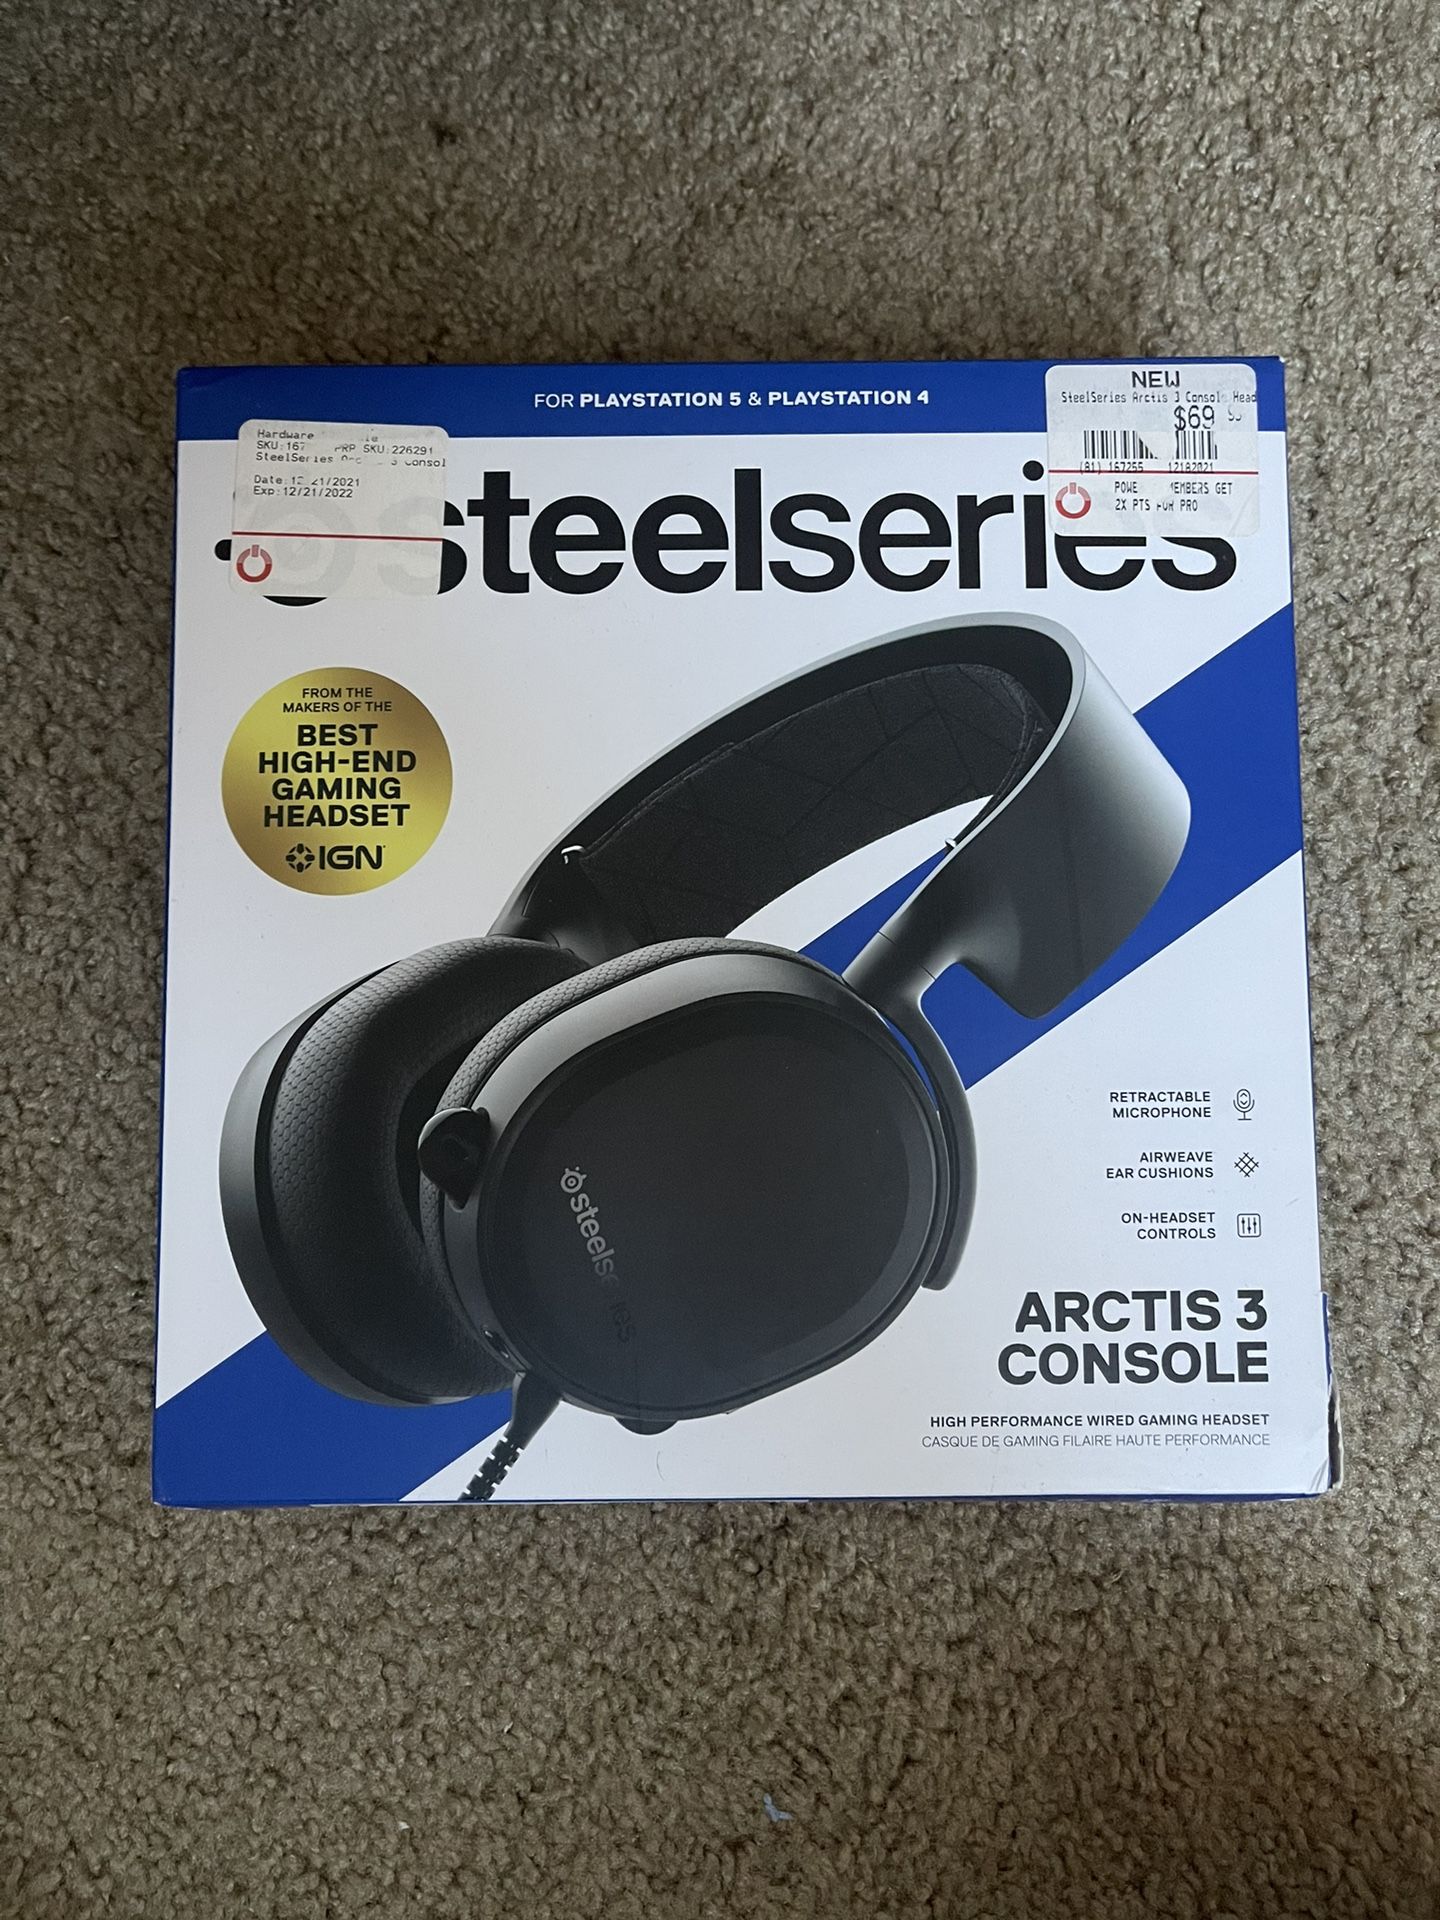 Steel series 3 gaming headset